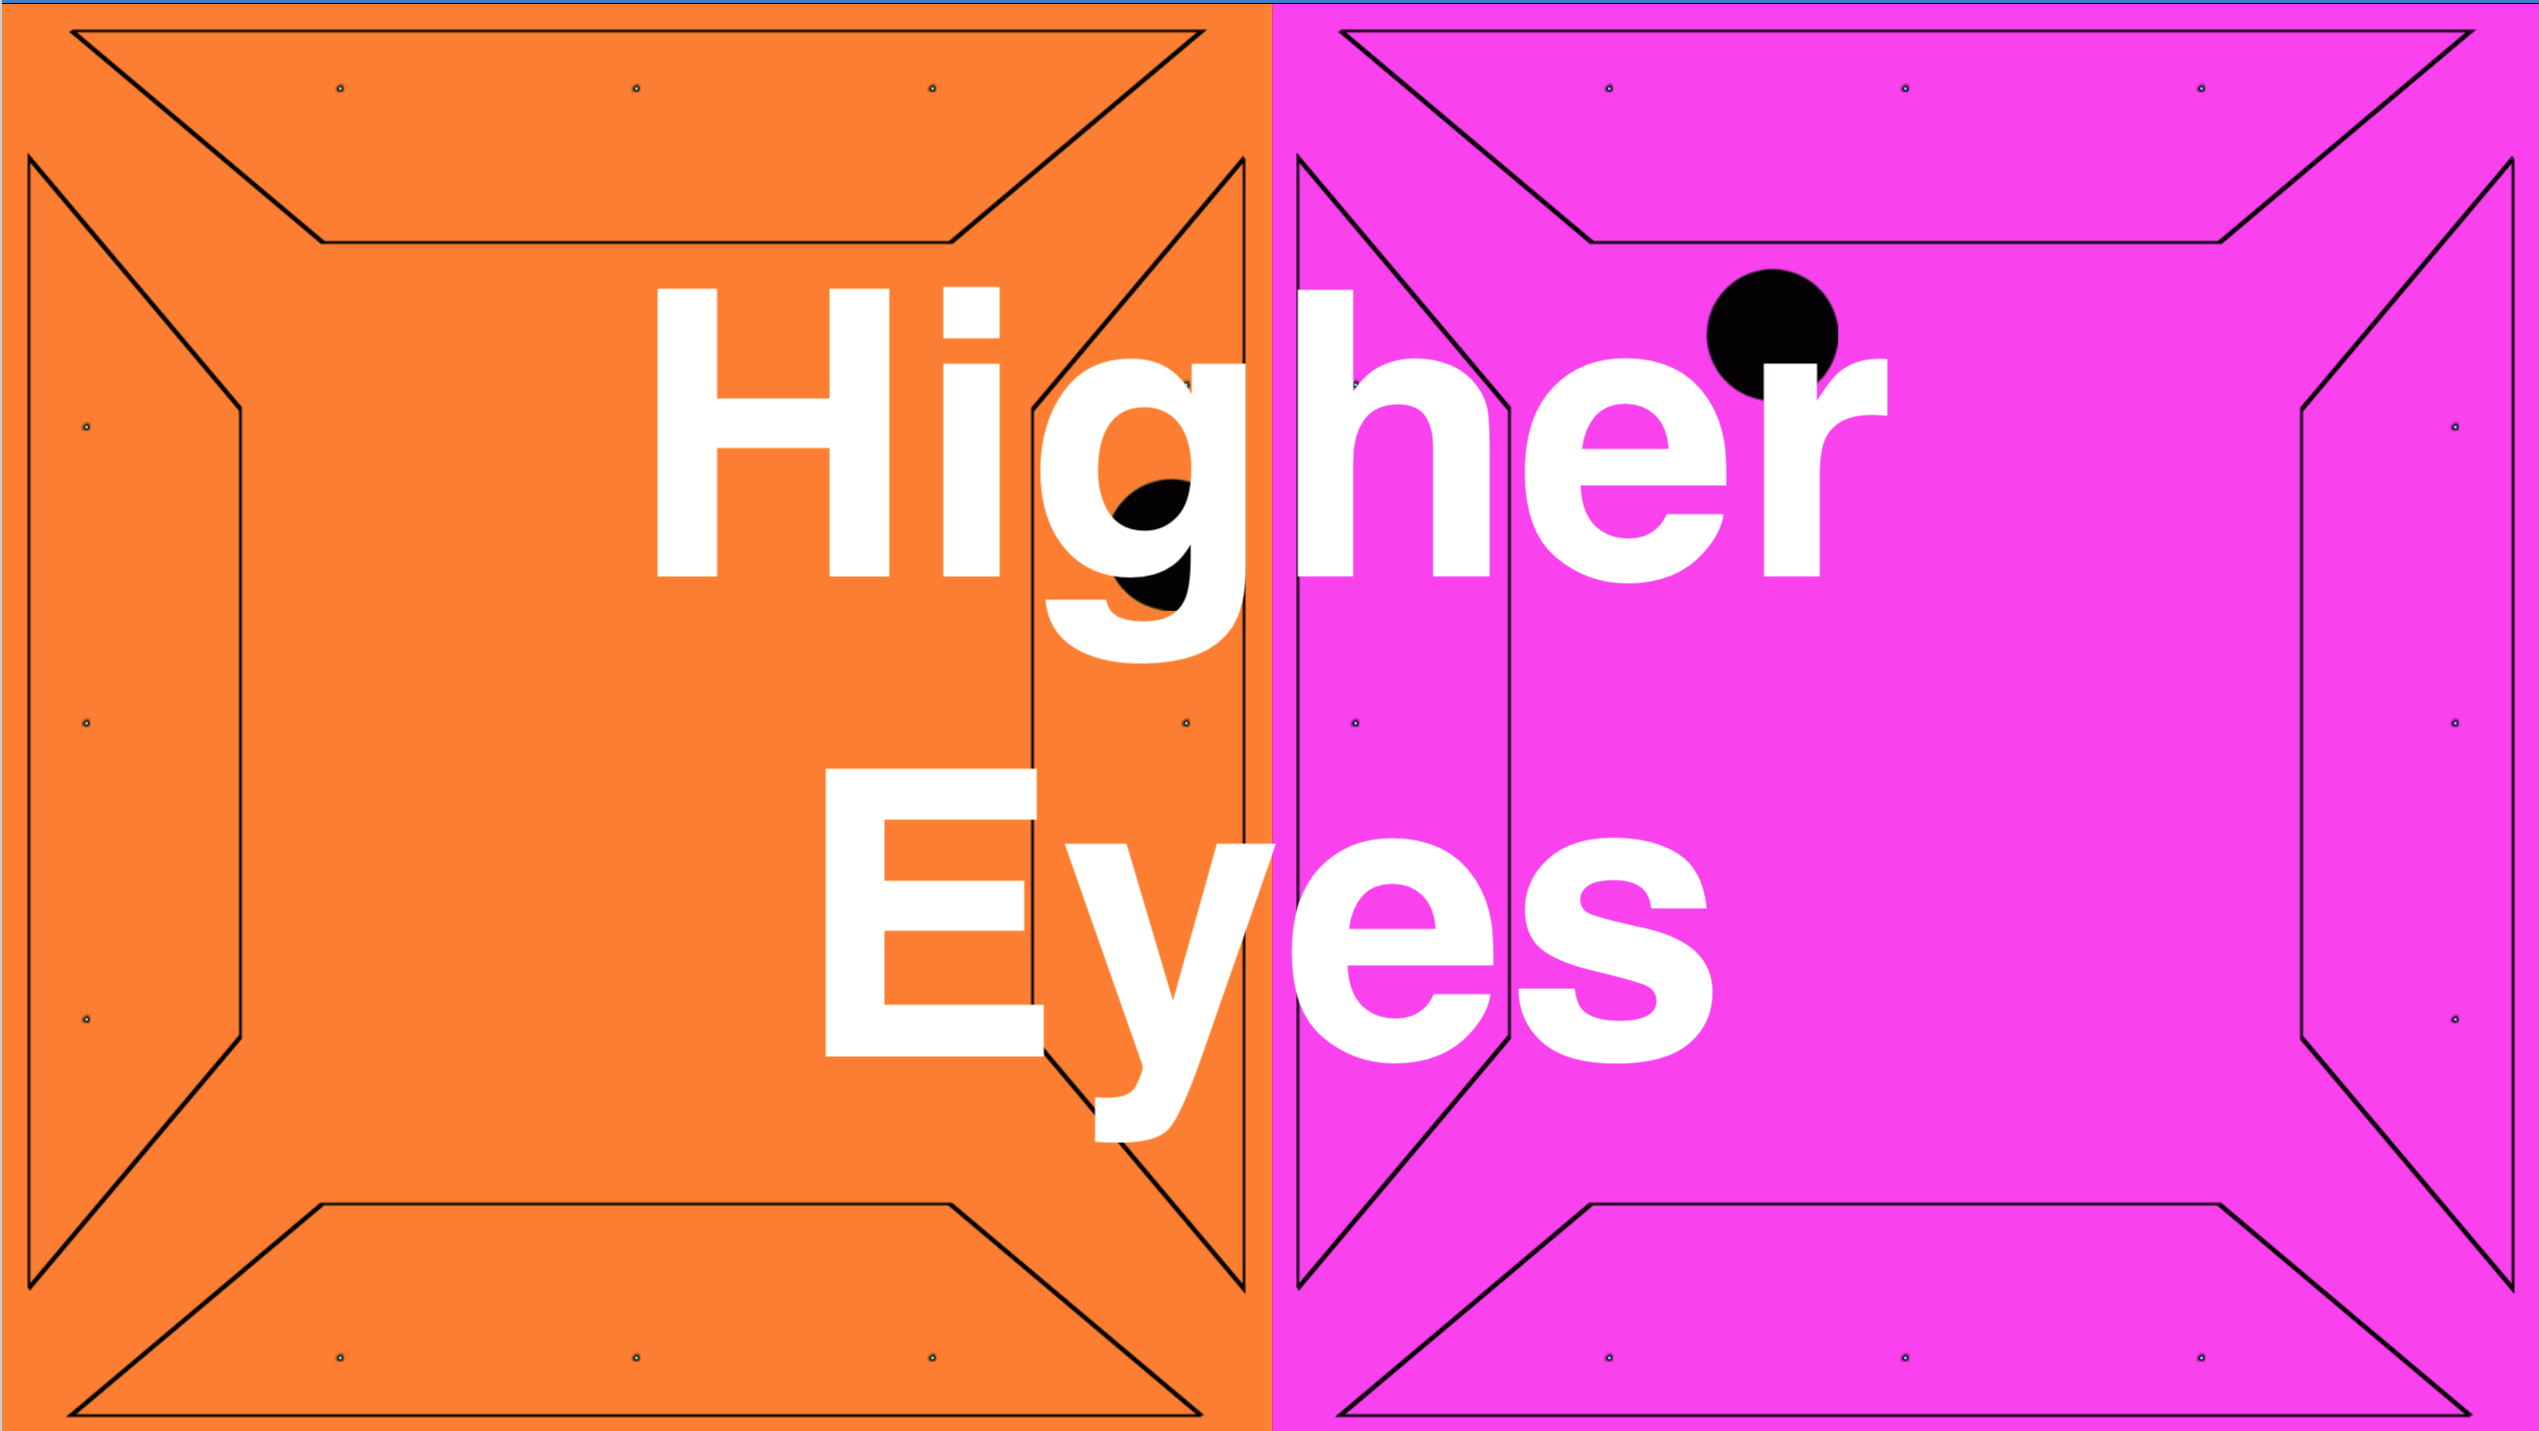 Higher Eyes